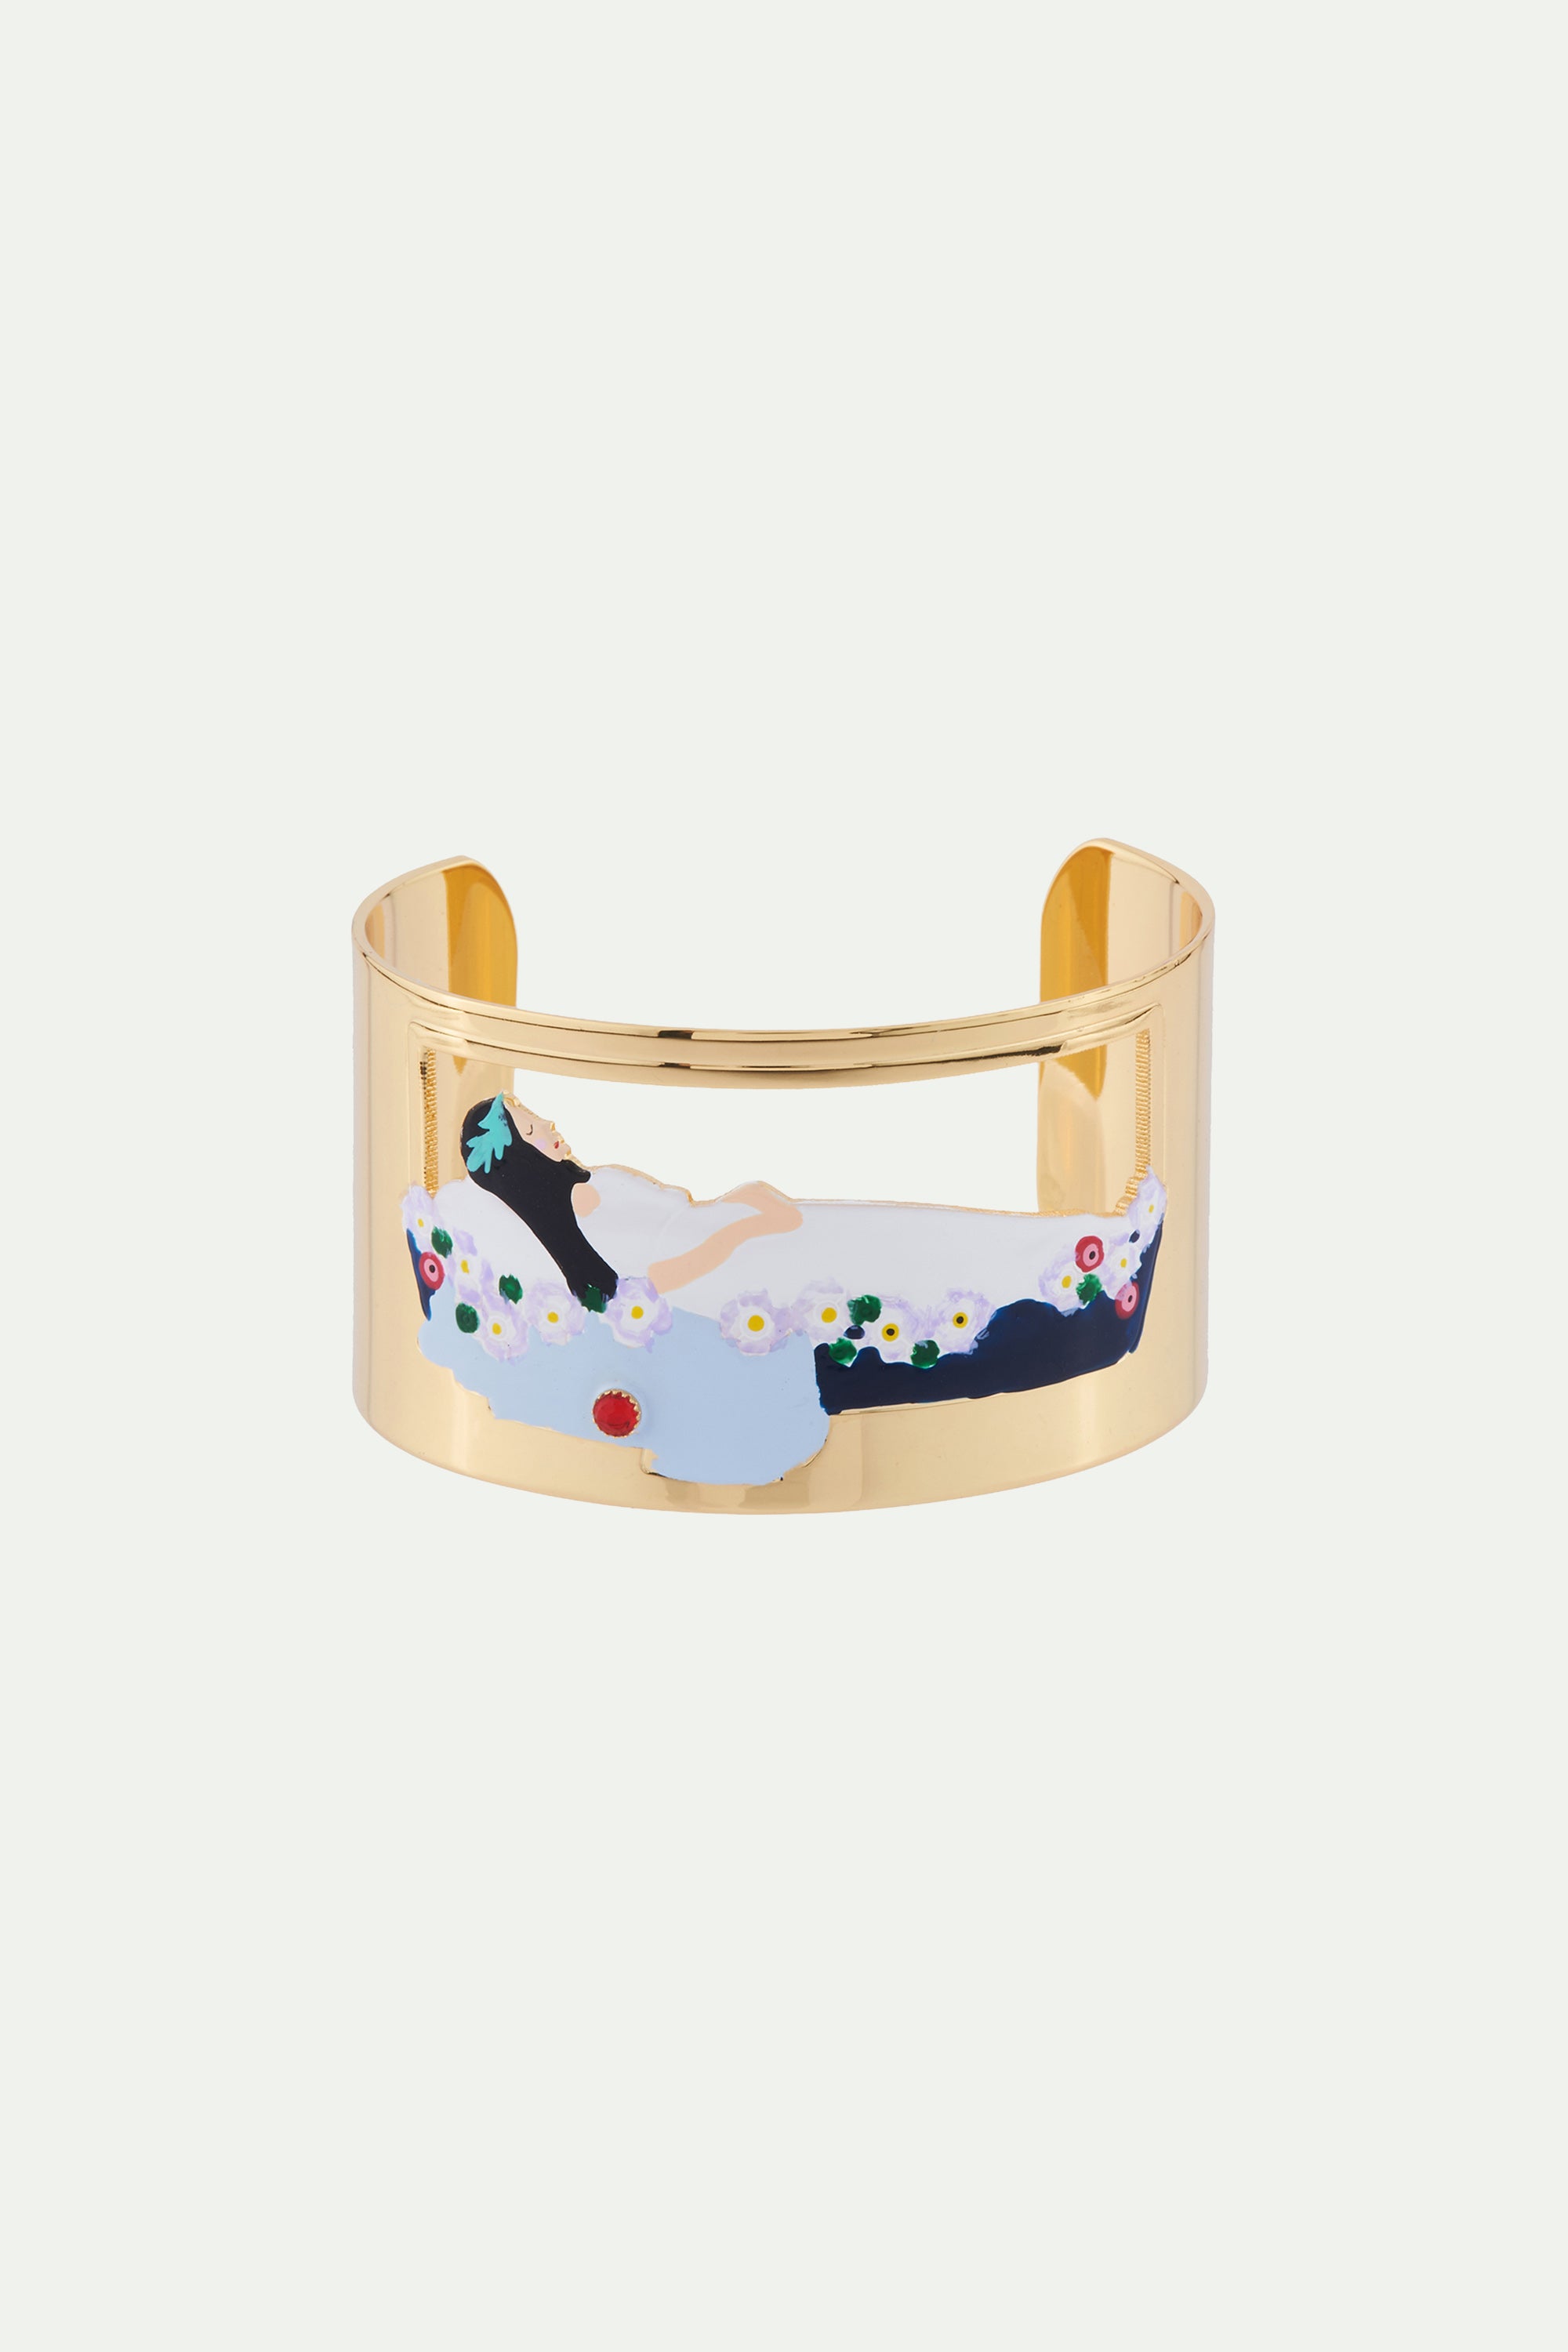 Snow White asleep in her cristal casket cuff